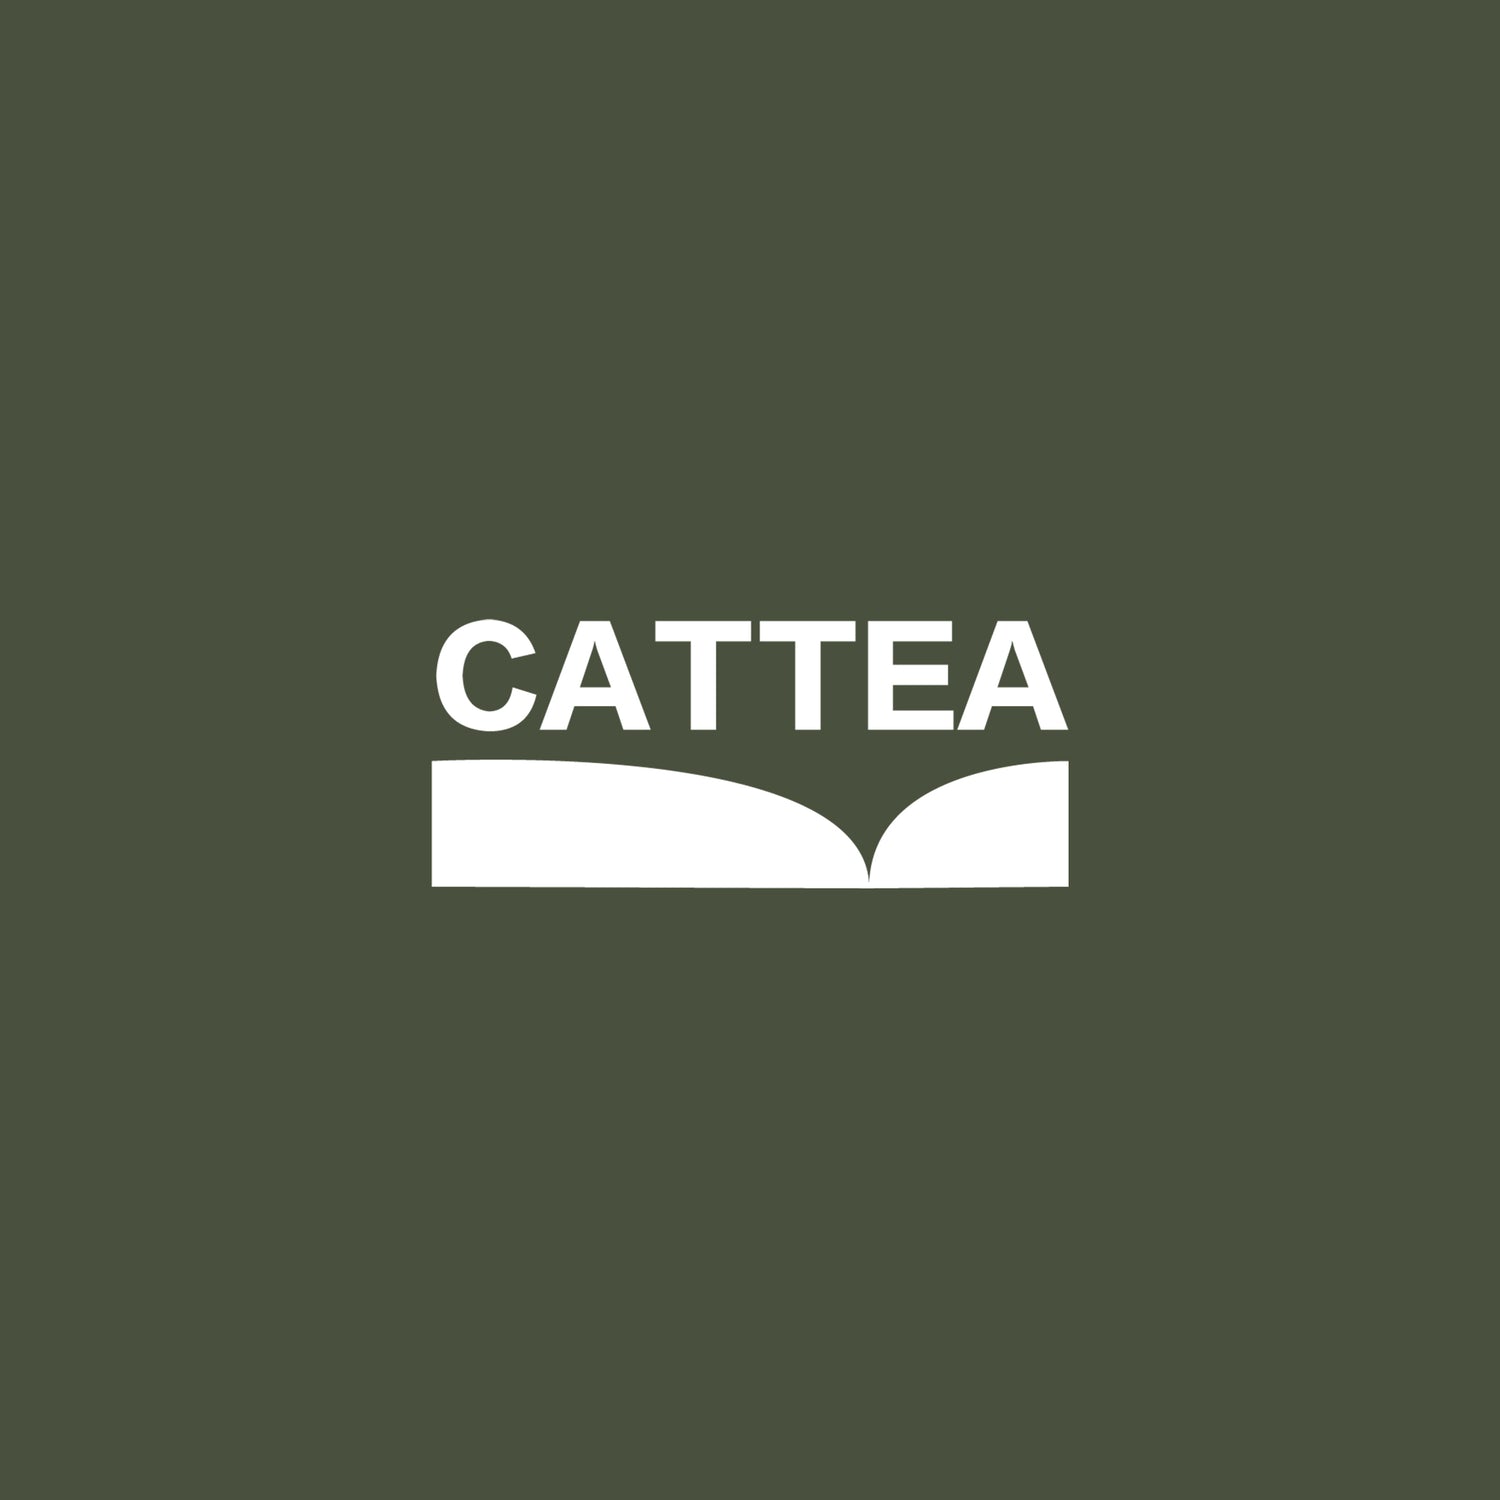 所有商品 - Cattea 台灣花果茶包/水果茶包品牌